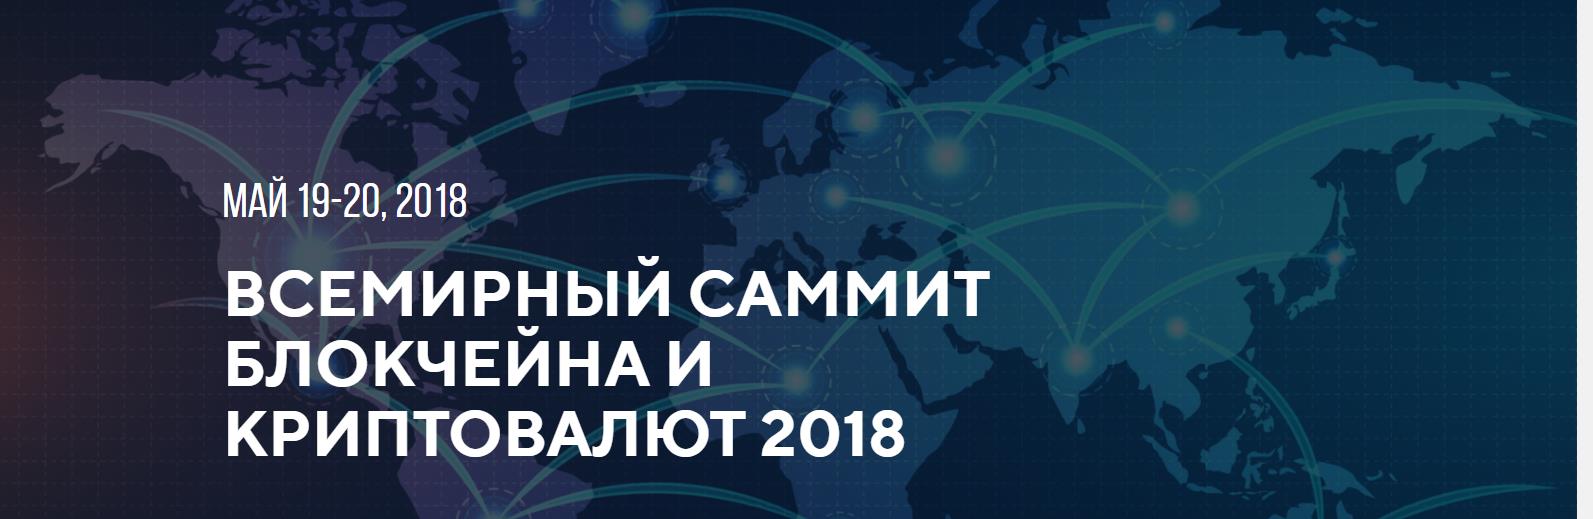 Всемирный саммит блокчейна и криптовалют 2018 [1]